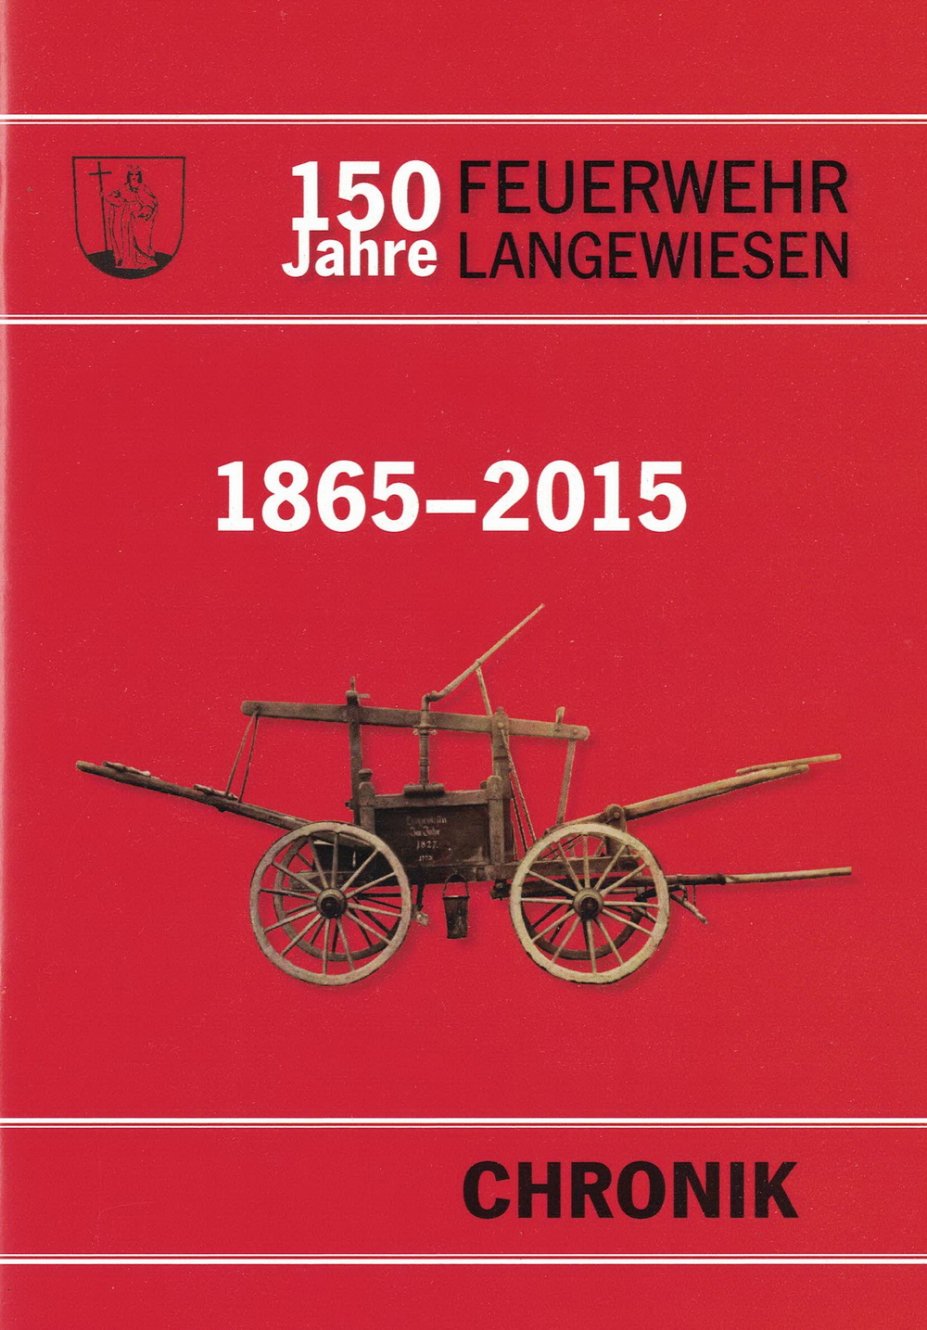 150 Jahre Feuerwehr Langewiesen